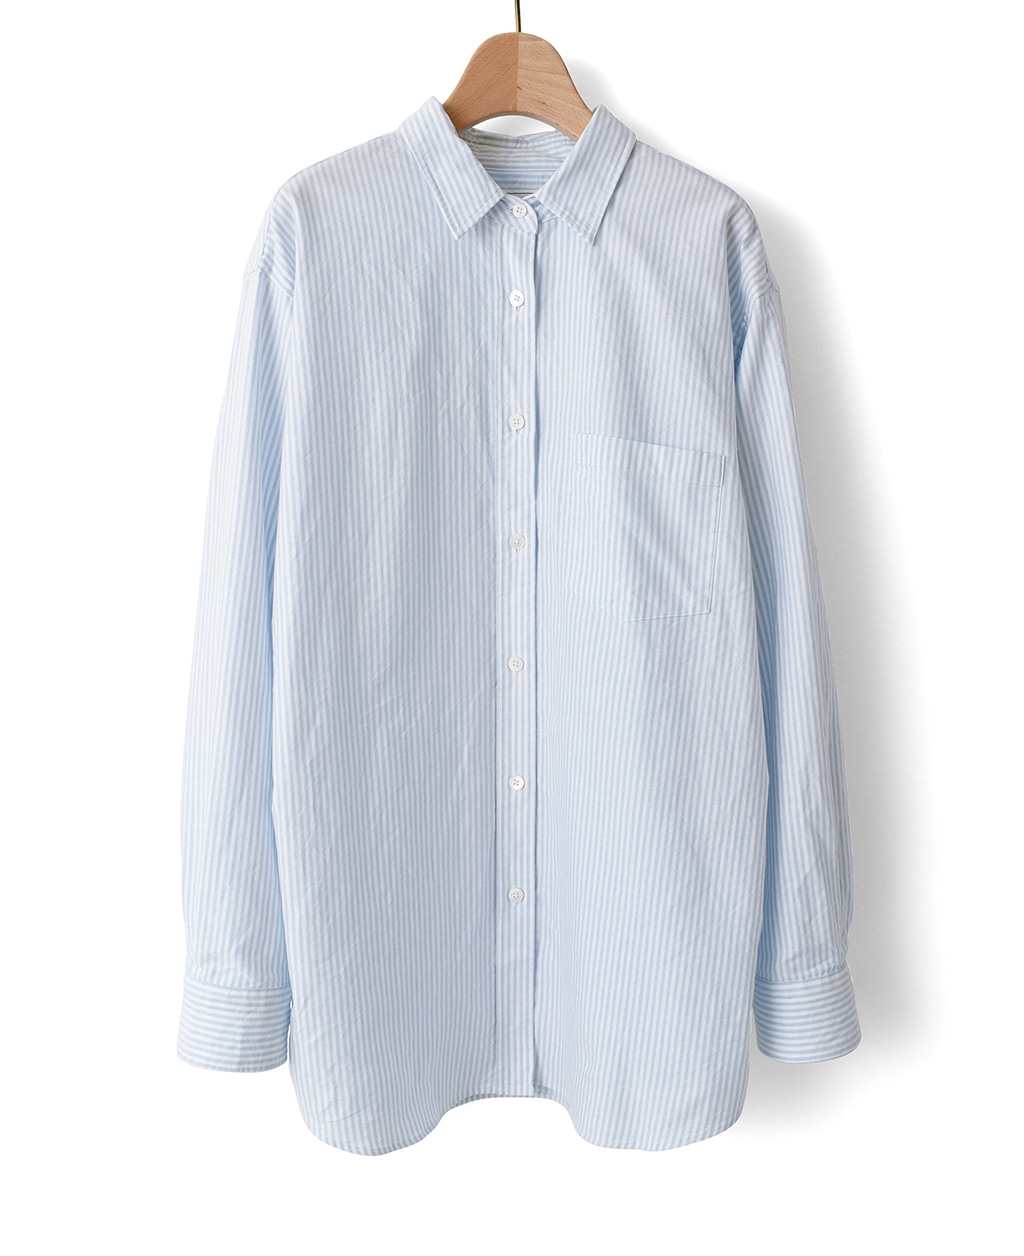 フリーサイズシャツ(Freeサイズ ブルー系): レディース | メーカーズシャツ鎌倉 公式通販 | 日本製ワイシャツ オーダーシャツ